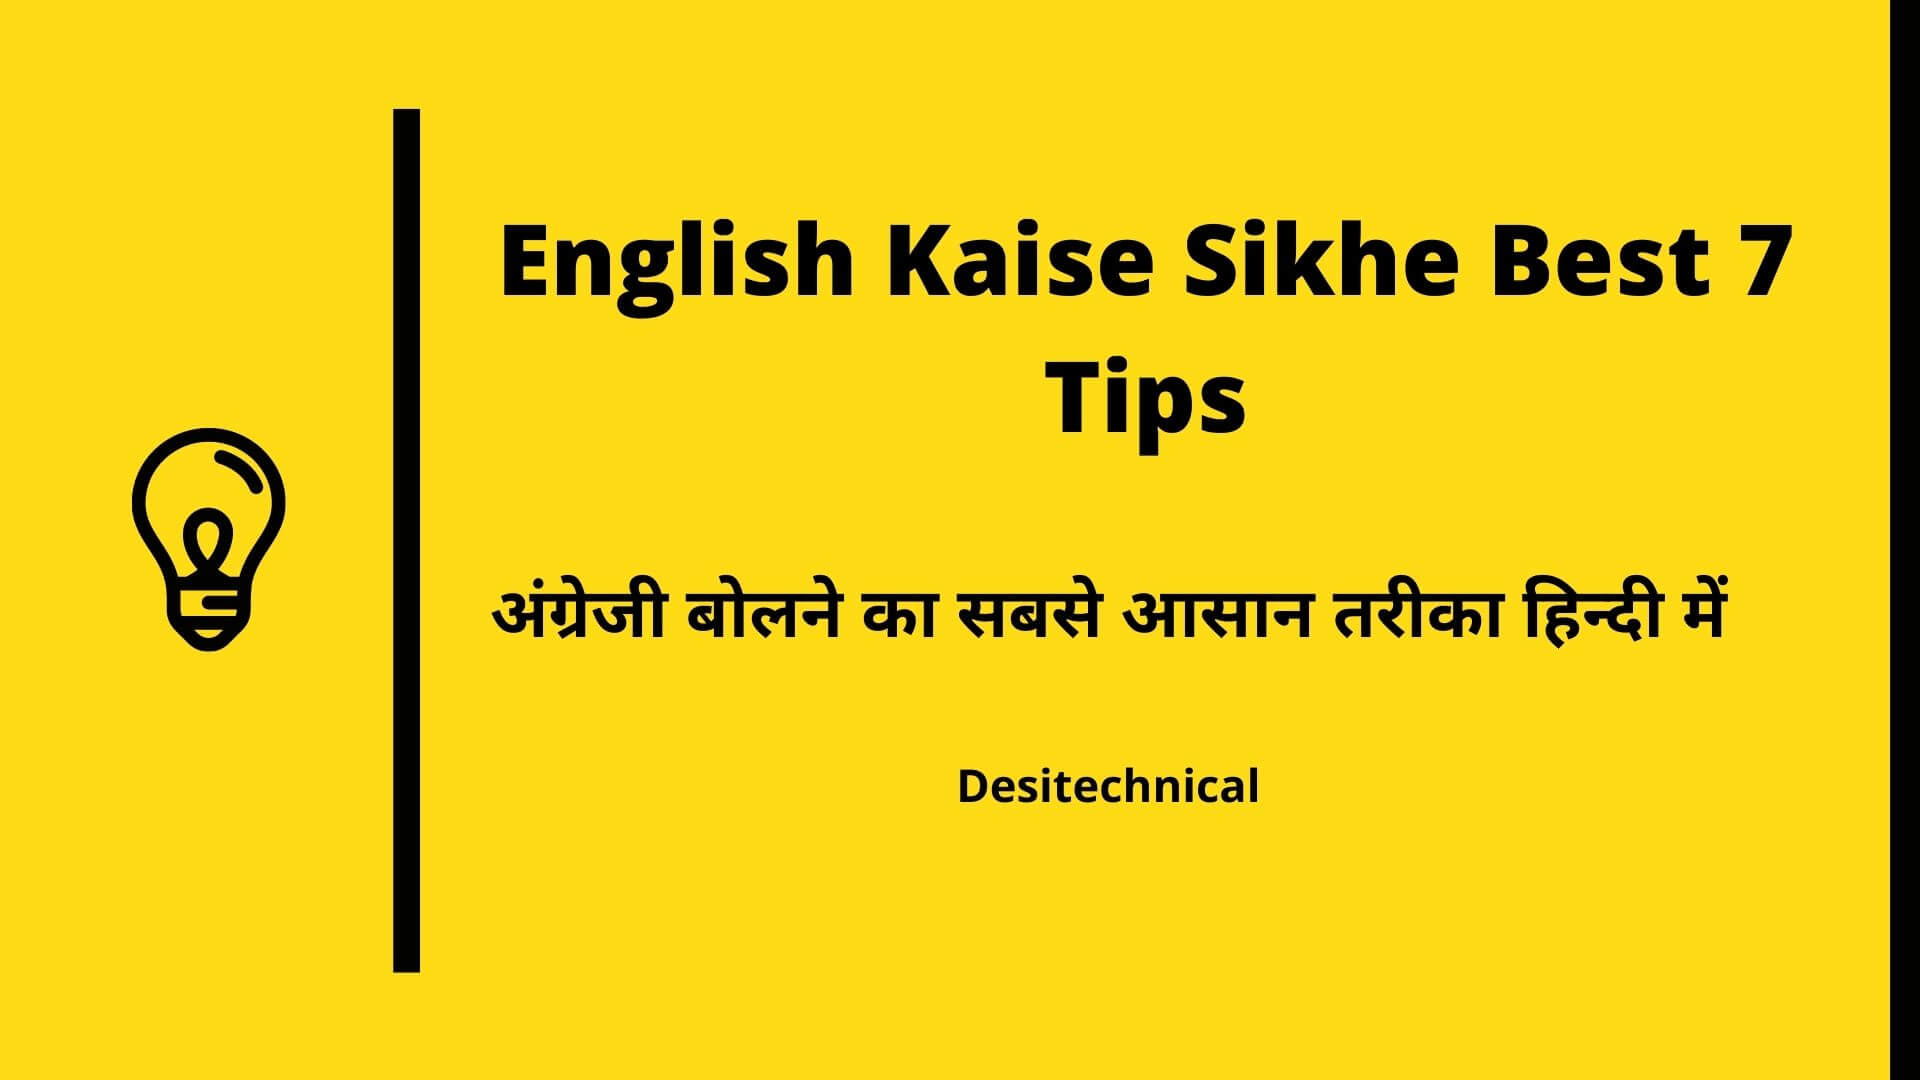 English Kaise Sikhe